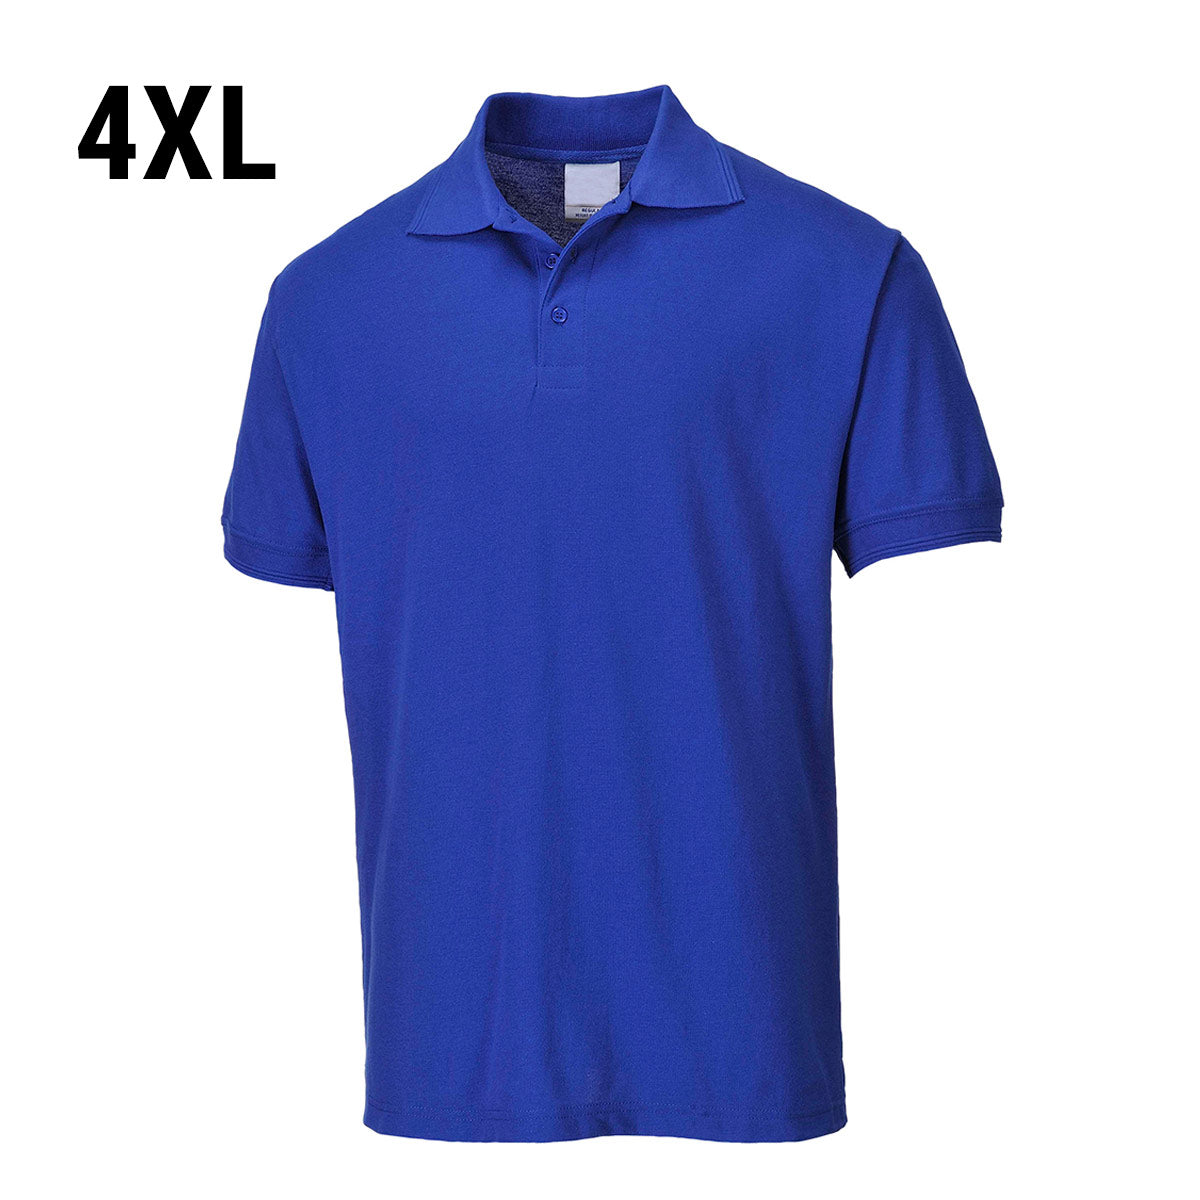 Poloskjorte for menn - kongeblå - størrelse: 4XL